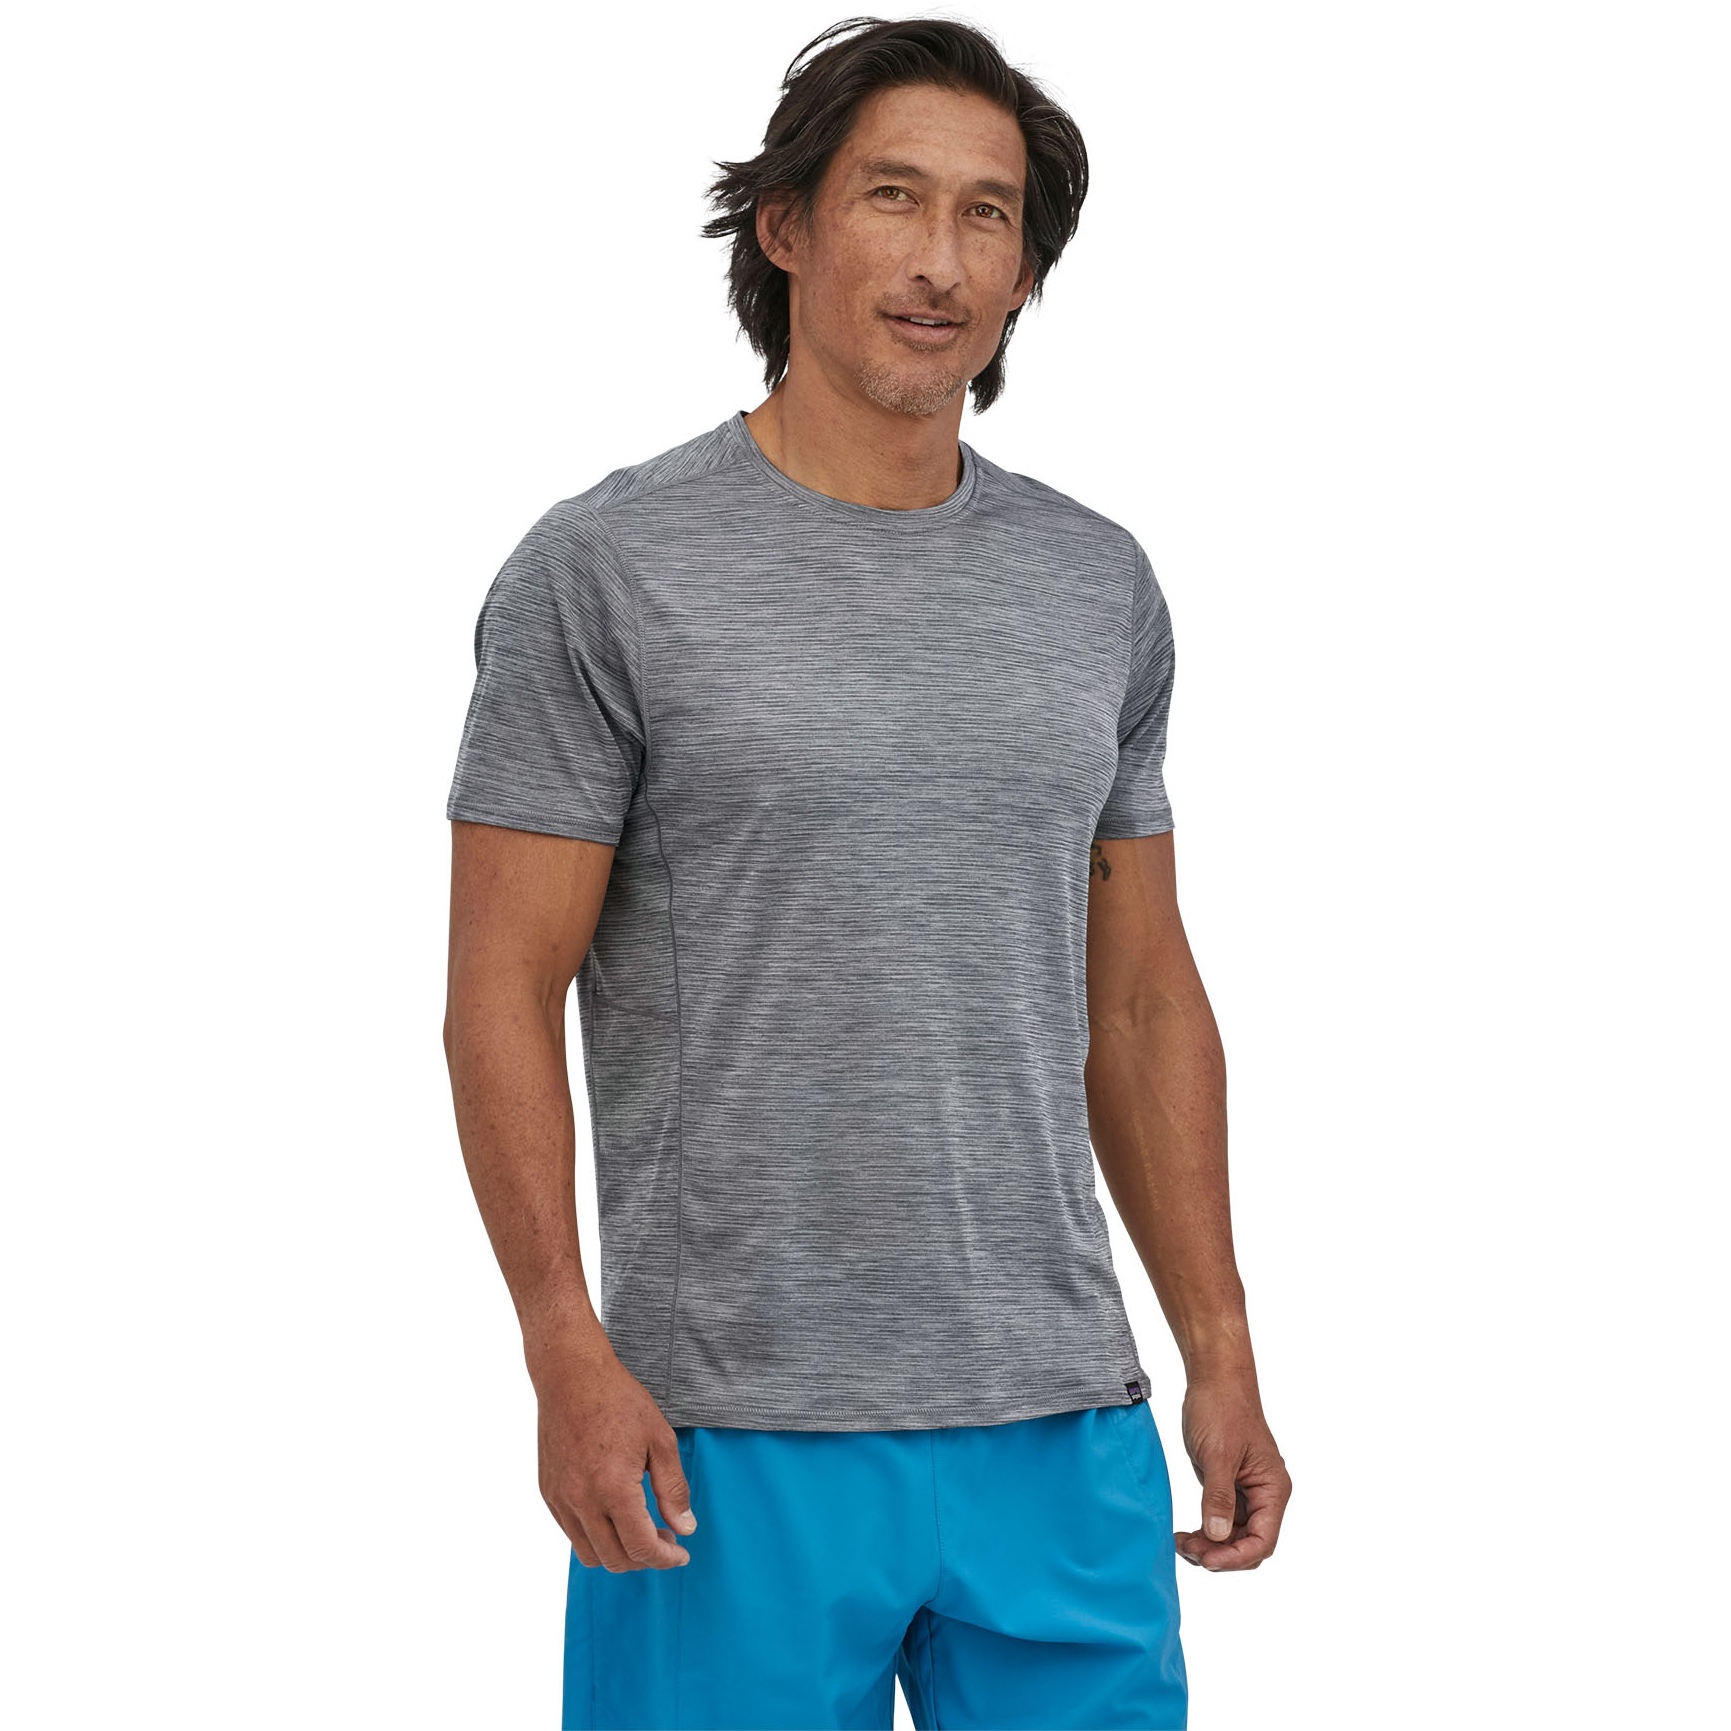 Produktbild von Patagonia Capilene Cool Lightweight T-Shirt Herren - Forge Grey - Feather Grey X-Dye